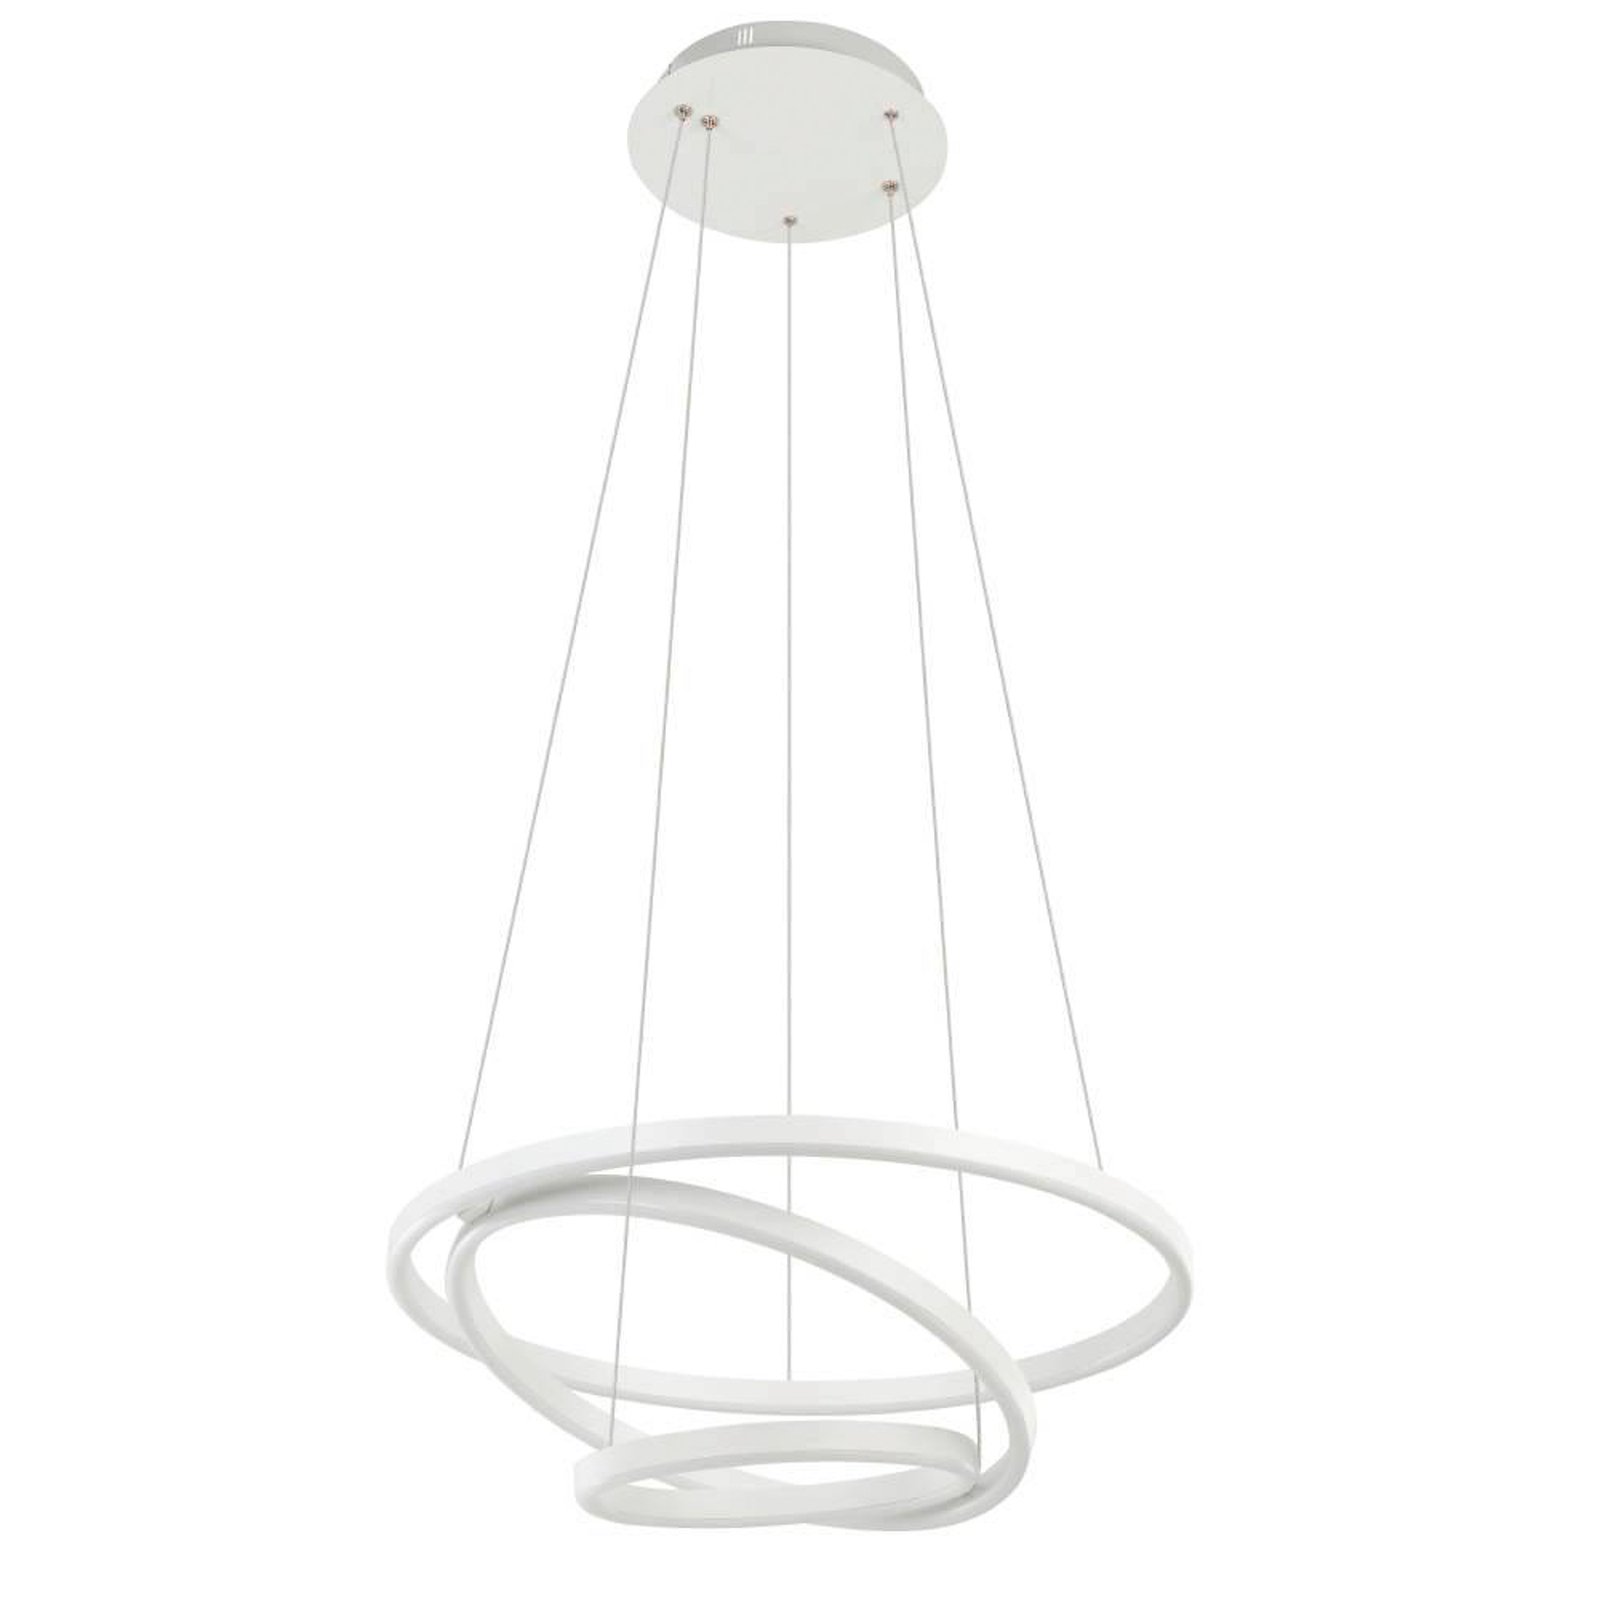 EGLO connect Lobinero-Z LED hanging light, white